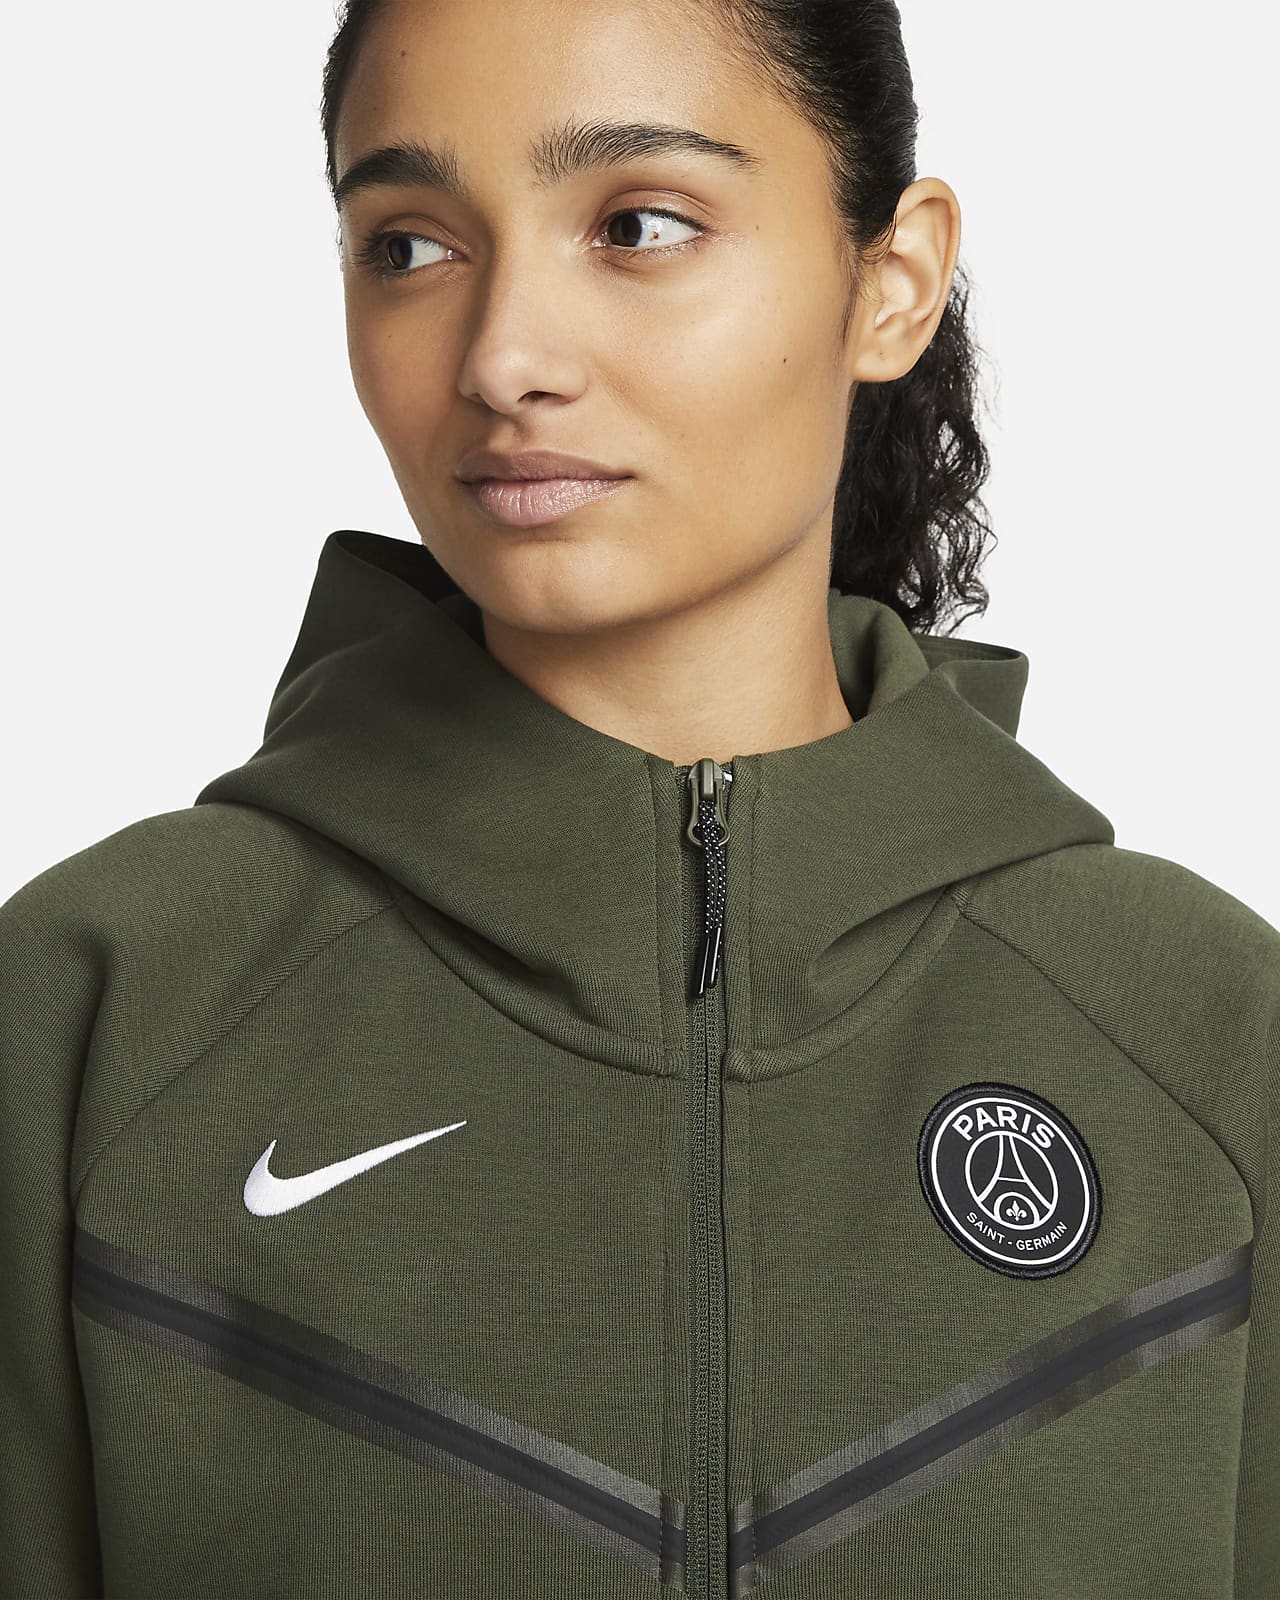 kopen verkiezing daar ben ik het mee eens Paris Saint-Germain Tech Fleece Windrunner Women's Full-Zip Hoodie. Nike IL